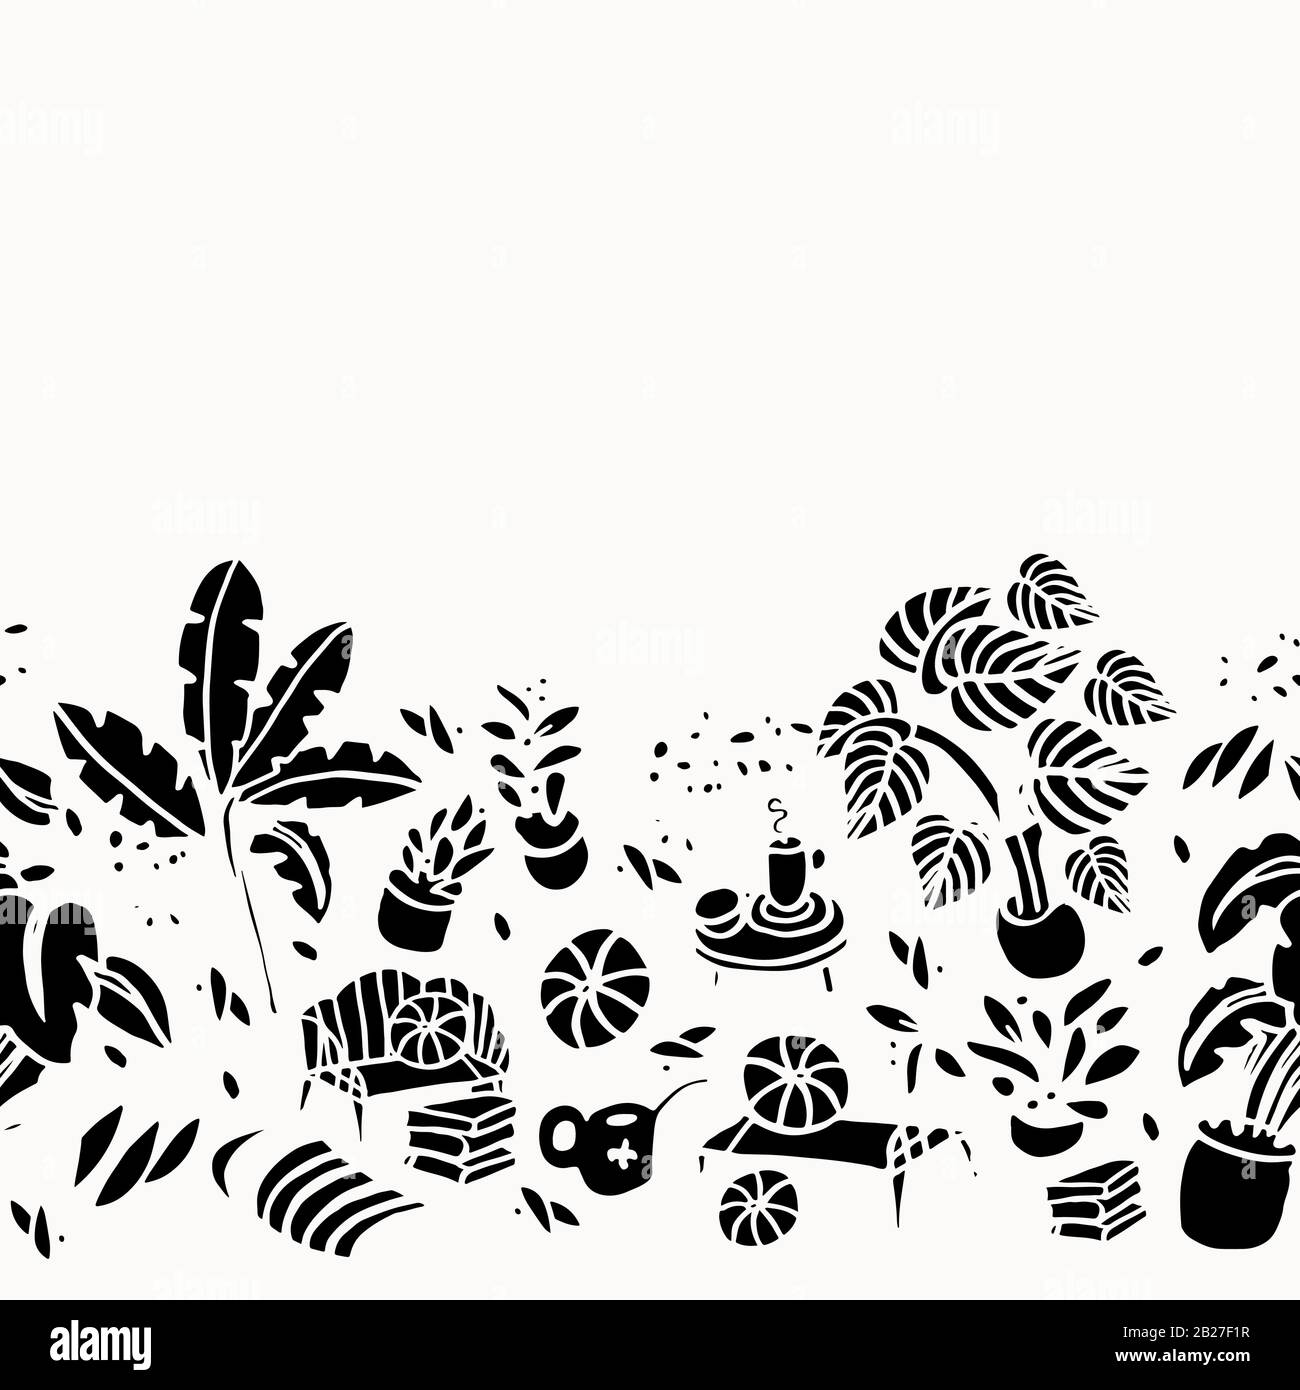 Fresco hygge leisure stile di vita confine con la moderna floreale e forma in bianco e nero. Elegante schema di piante tropicali. Disegno di disegno di disegno di superficie. Illustrazione Vettoriale